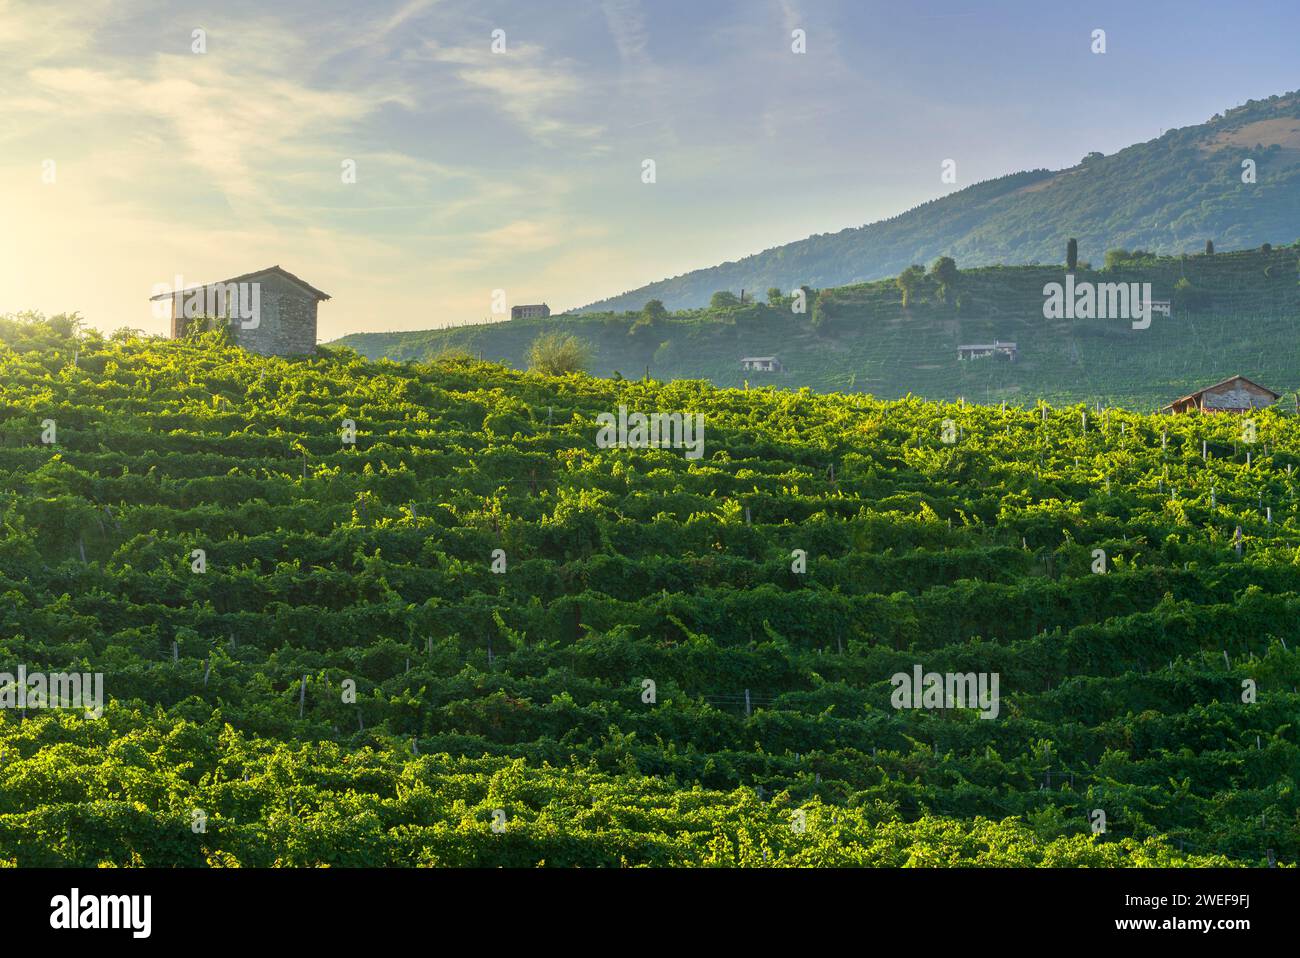 Vignobles de Prosecco Hills, site classé au patrimoine mondial de l'UNESCO. Valdobbiadene, Vénétie, Italie Banque D'Images